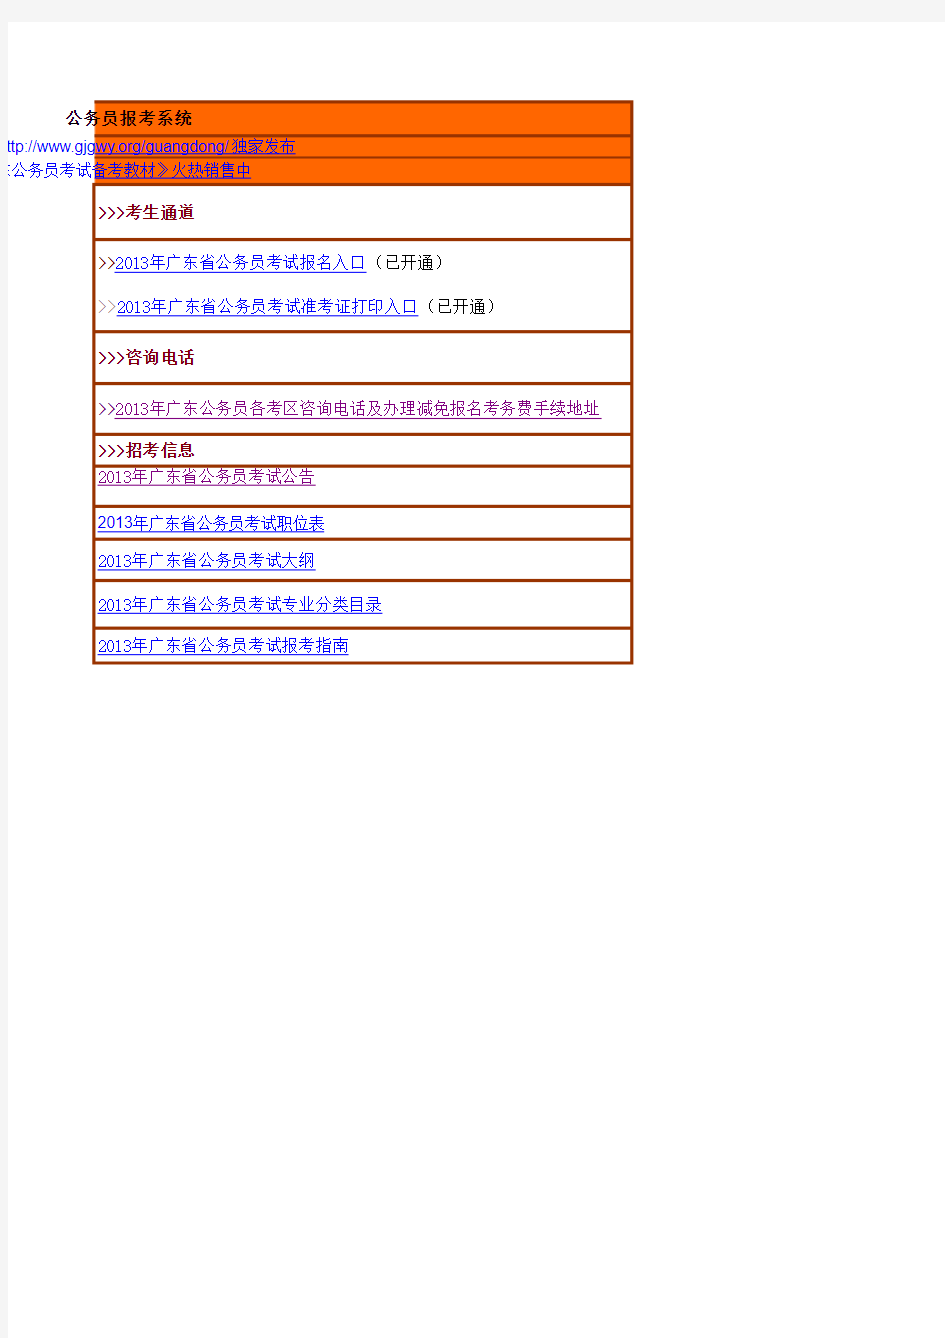 广东省2013年考试录用乡镇(街道)机关公务员职位表